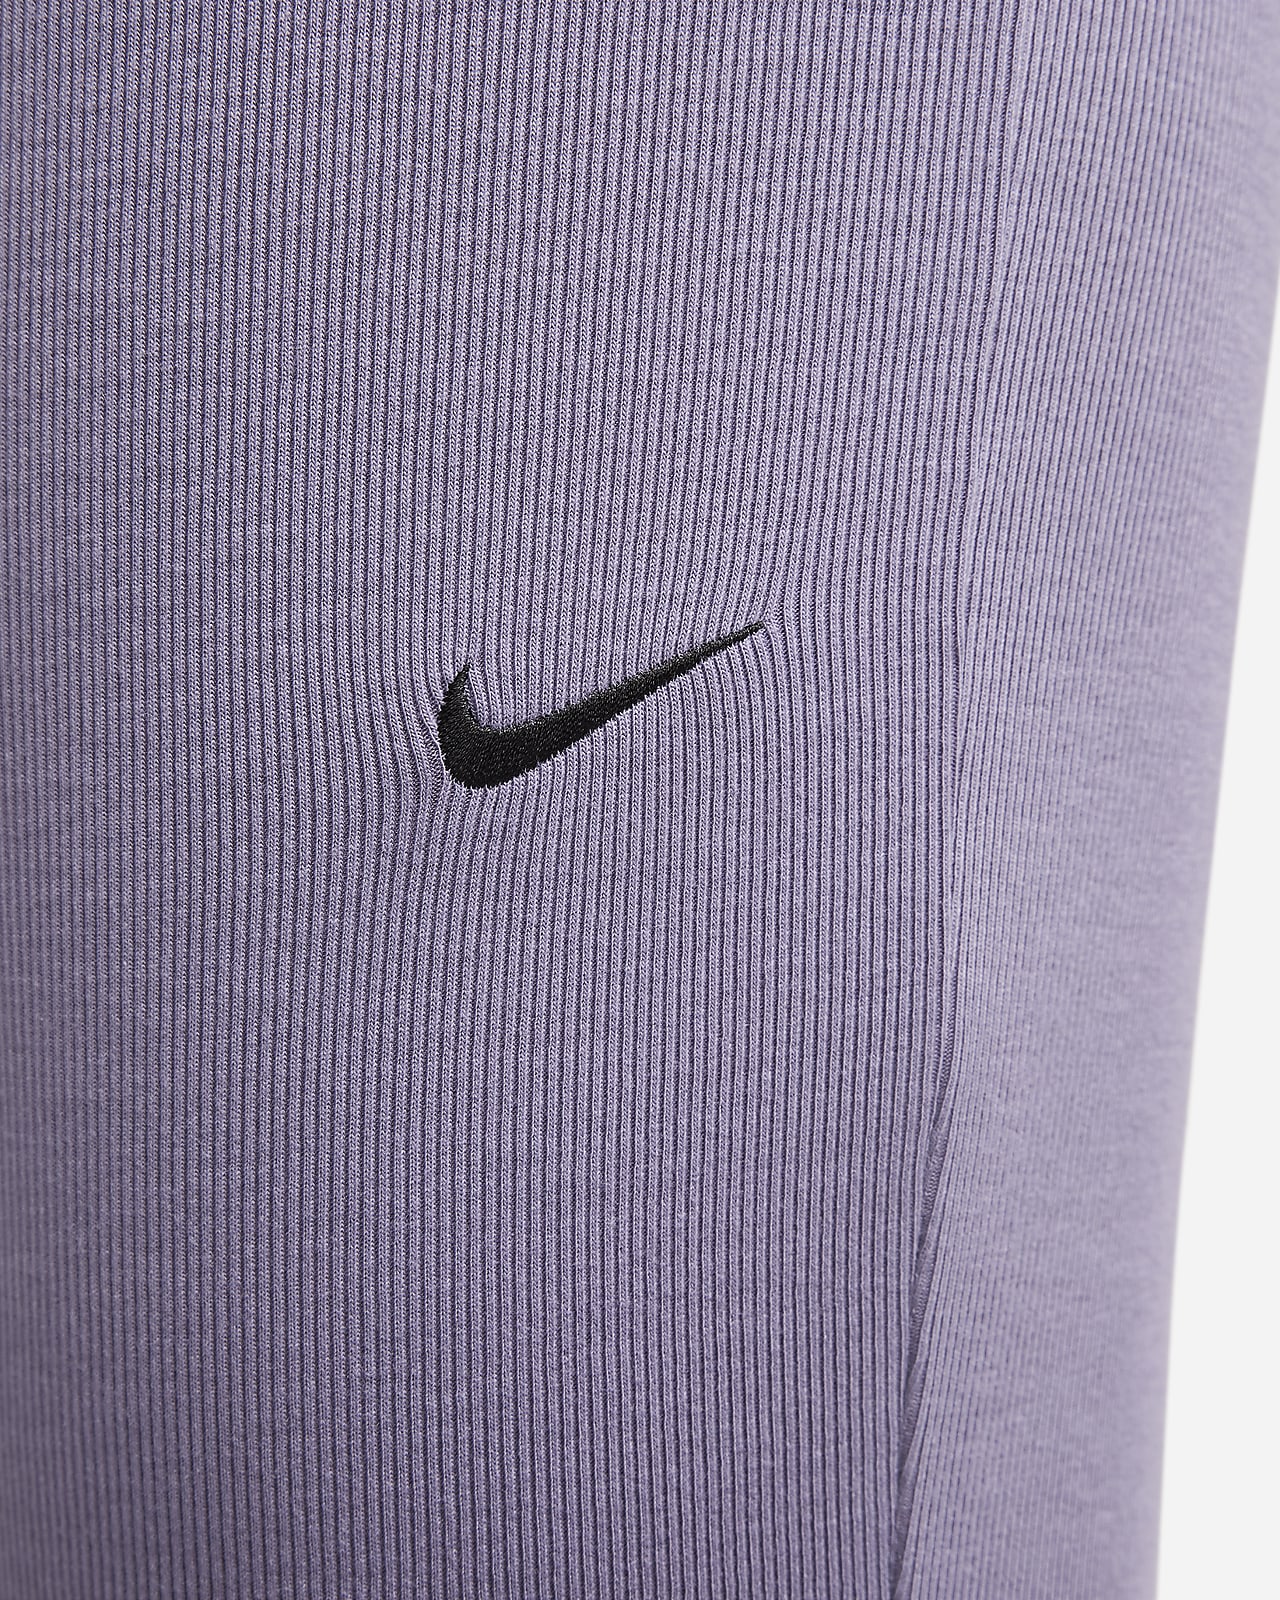 Nike - New Nike Leggings on Designer Wardrobe